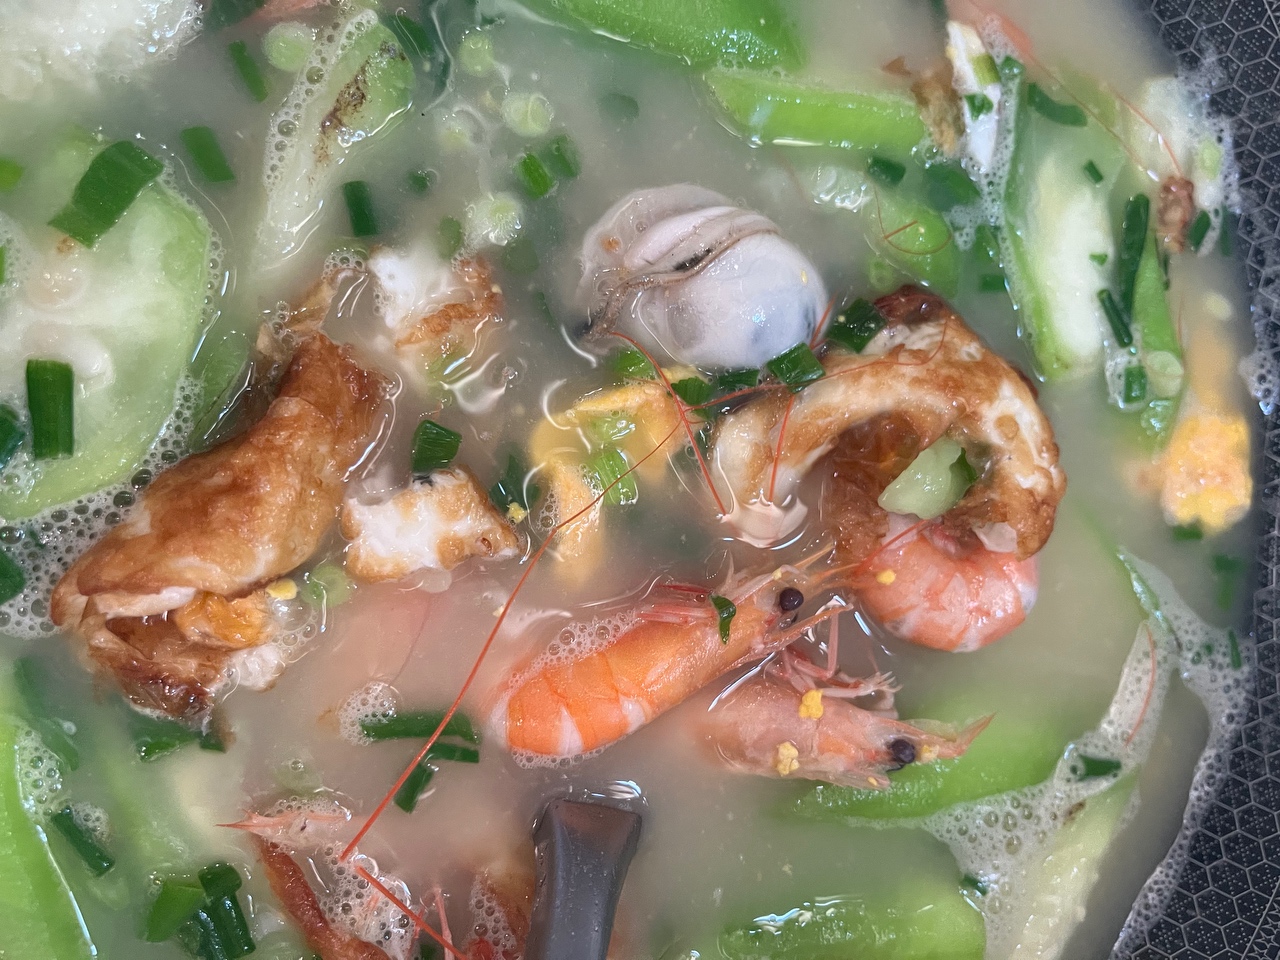 丝瓜海鲜汤的做法